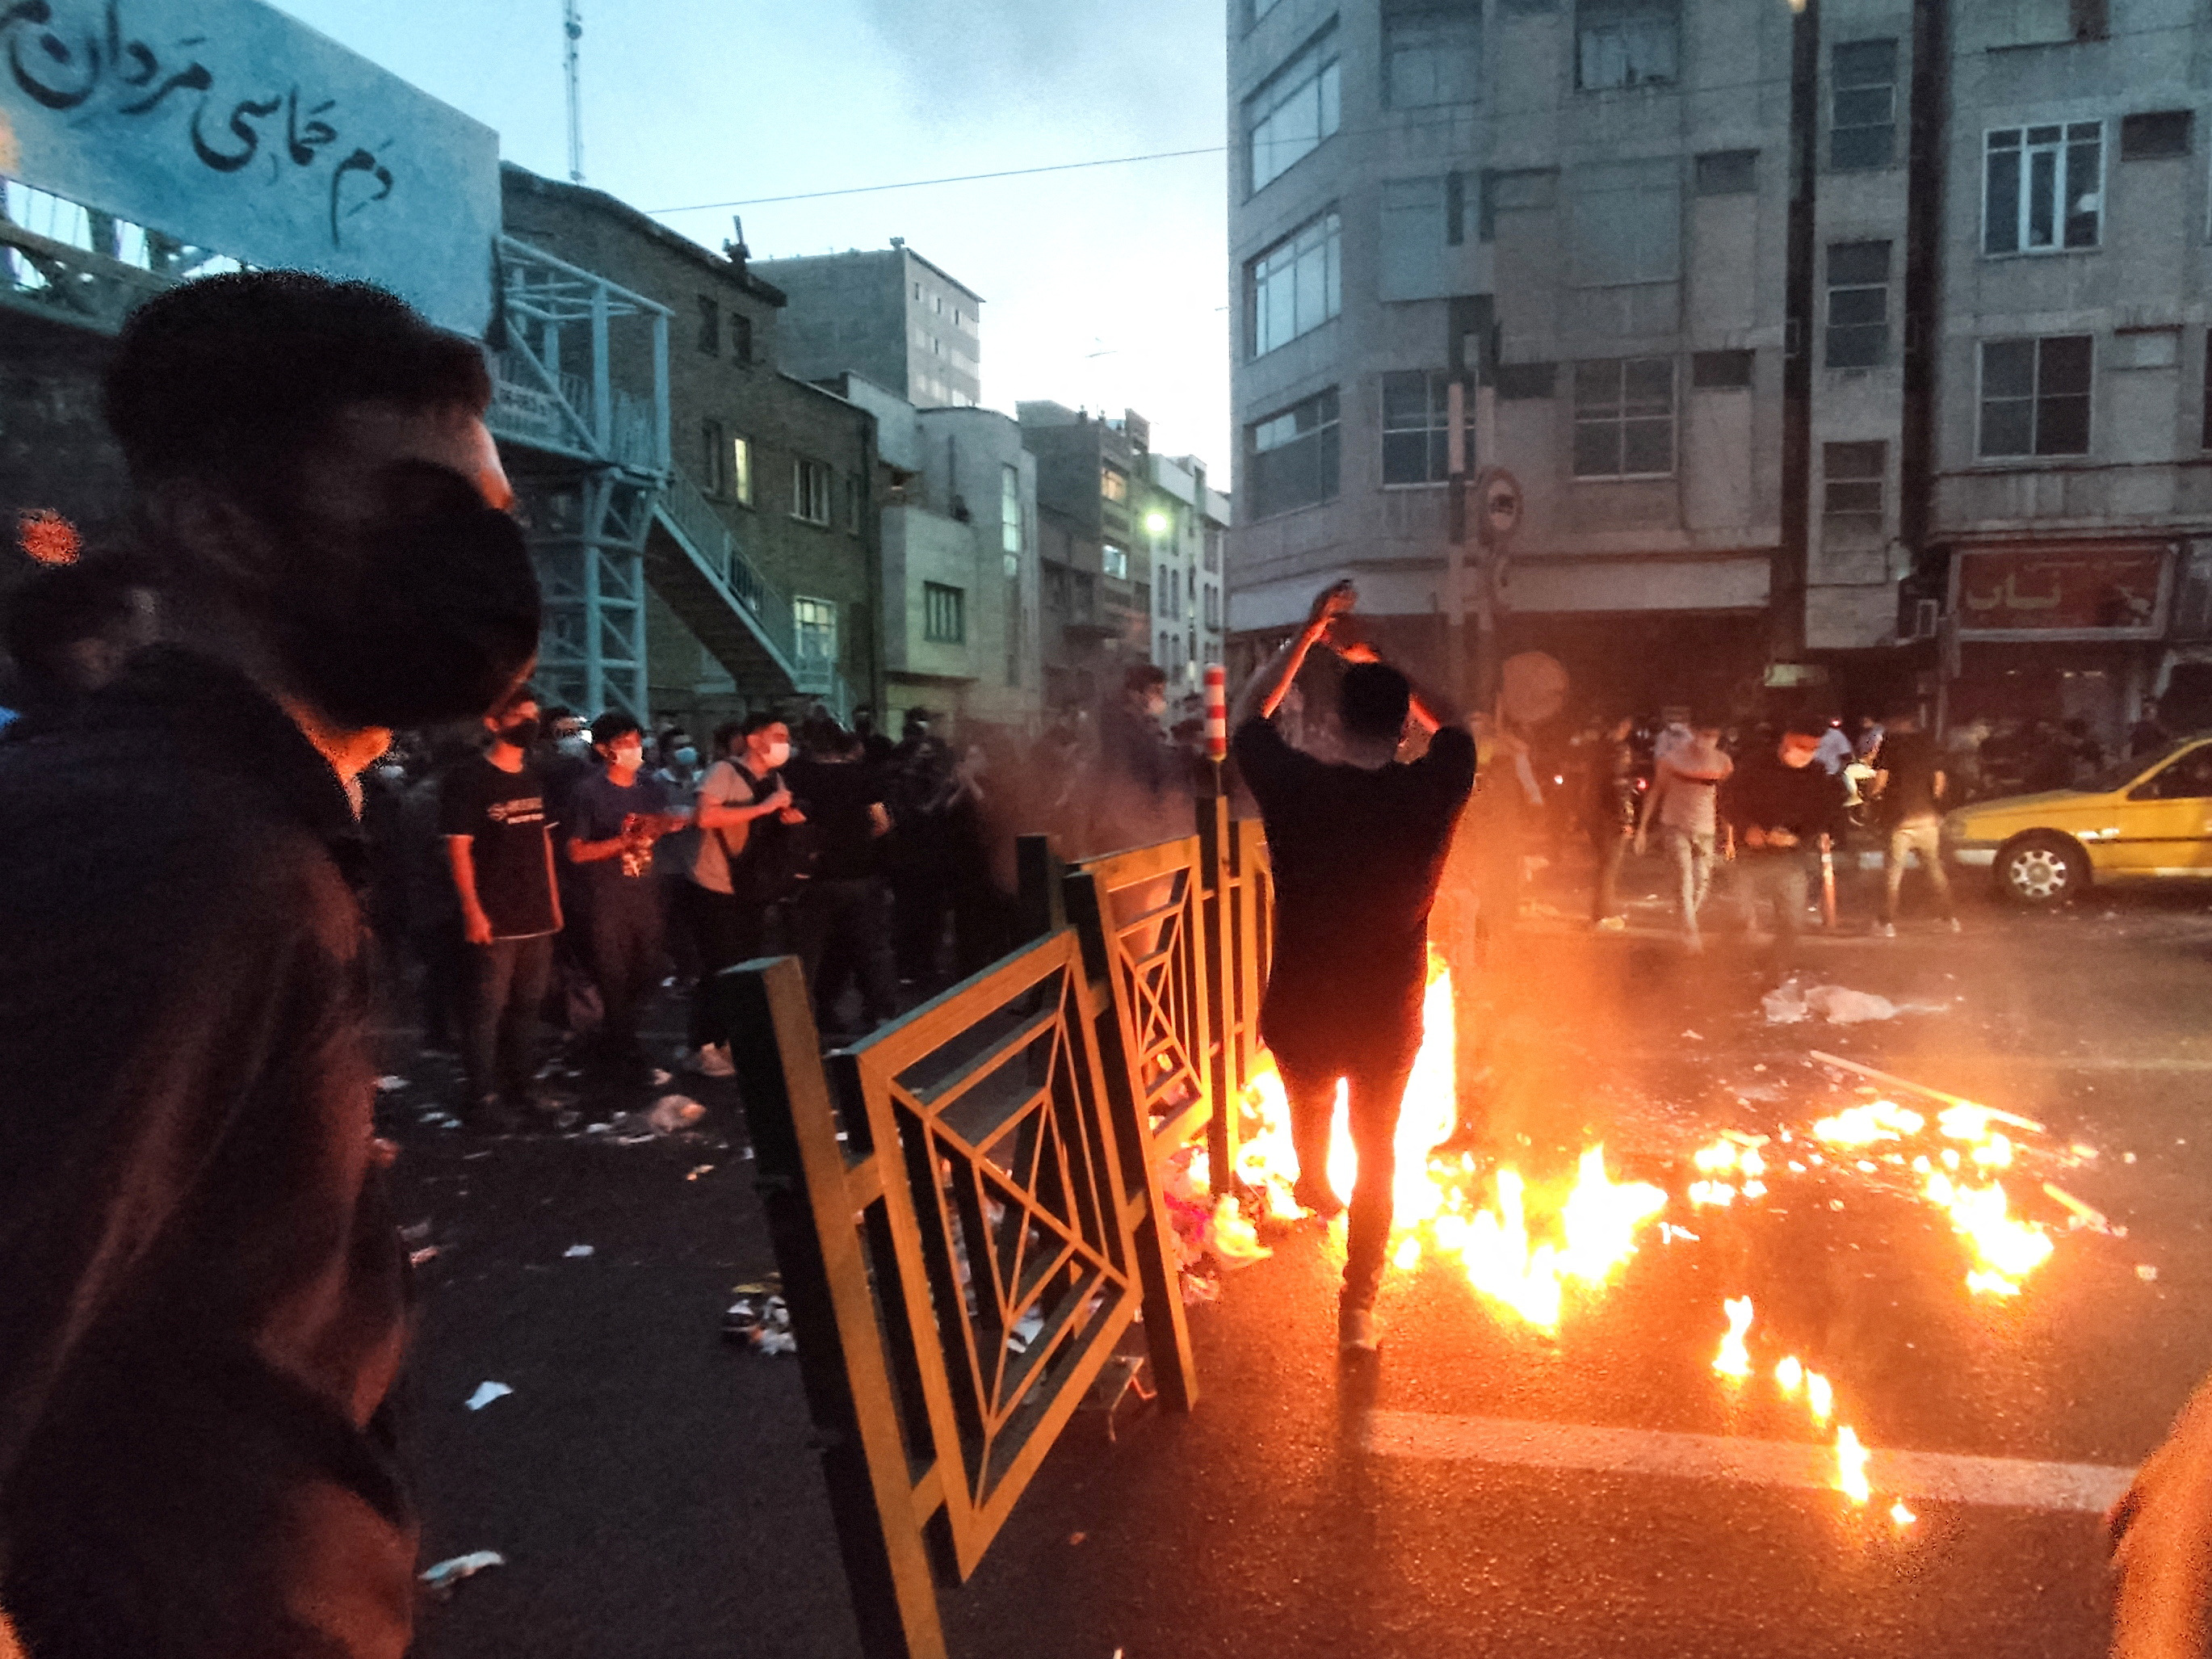 La gente enciende un fuego durante una protesta por la muerte de Mahsa Amini, una mujer que murió después de ser arrestada por la "policía de la moralidad" de la república islámica, en Teherán, Irán, el 21 de septiembre de 2022. (WANA vía REUTERS)